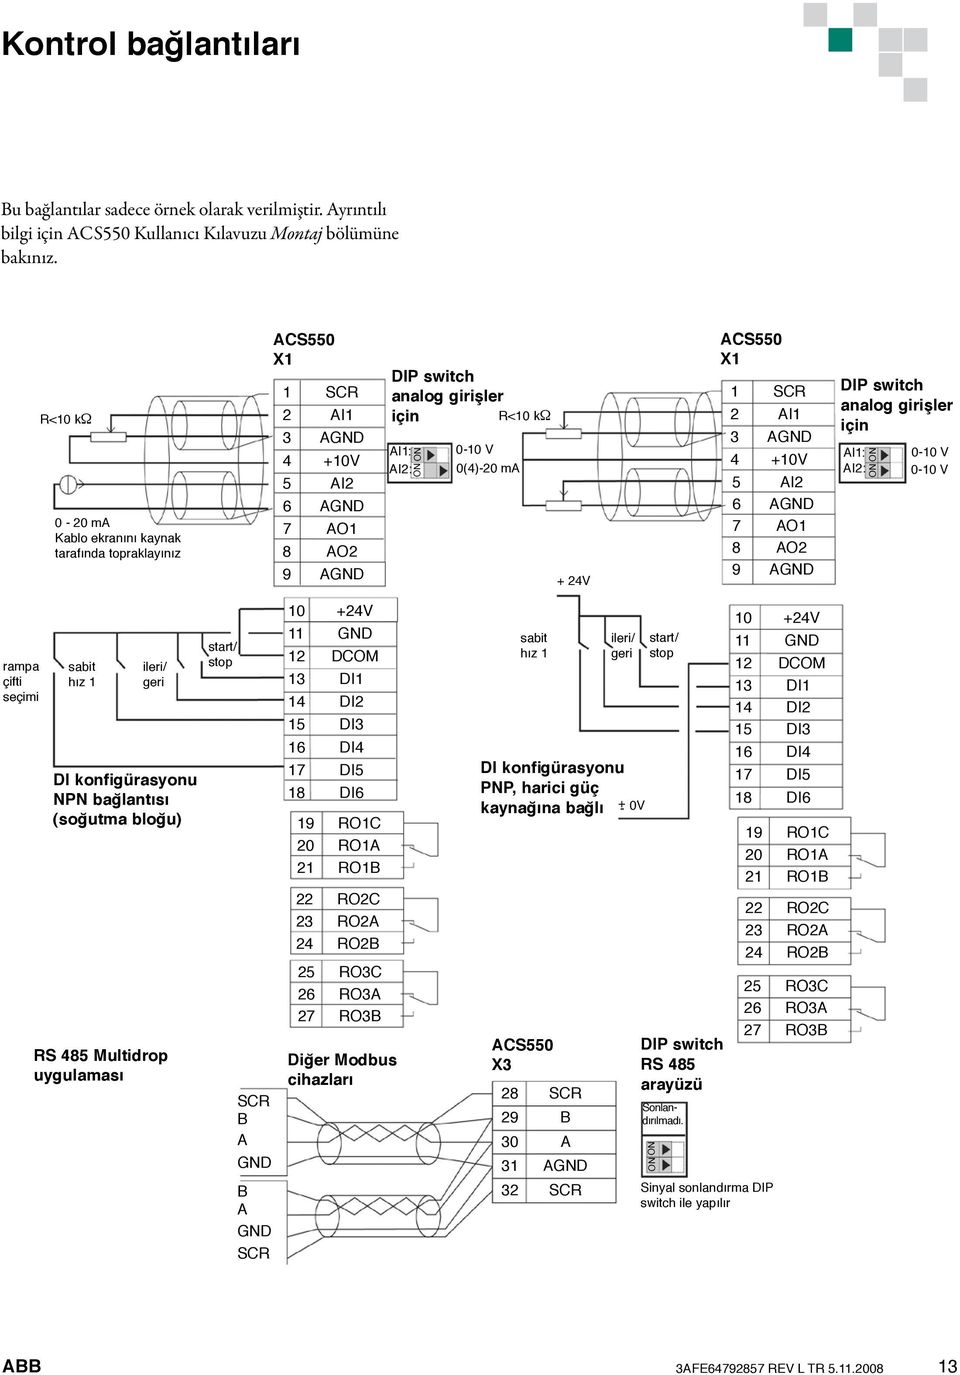 CS550 X1 1 SCR 2 I1 3 GND 4 +10V 5 I2 6 GND 7 O1 8 O2 9 GND DIP switch analog girişler için I1: I2: ON ON 0-10 V 0-10 V rampa çifti seçimi sabit hız 1 ileri/ geri DI konfigürasyonu NPN bağlantısı